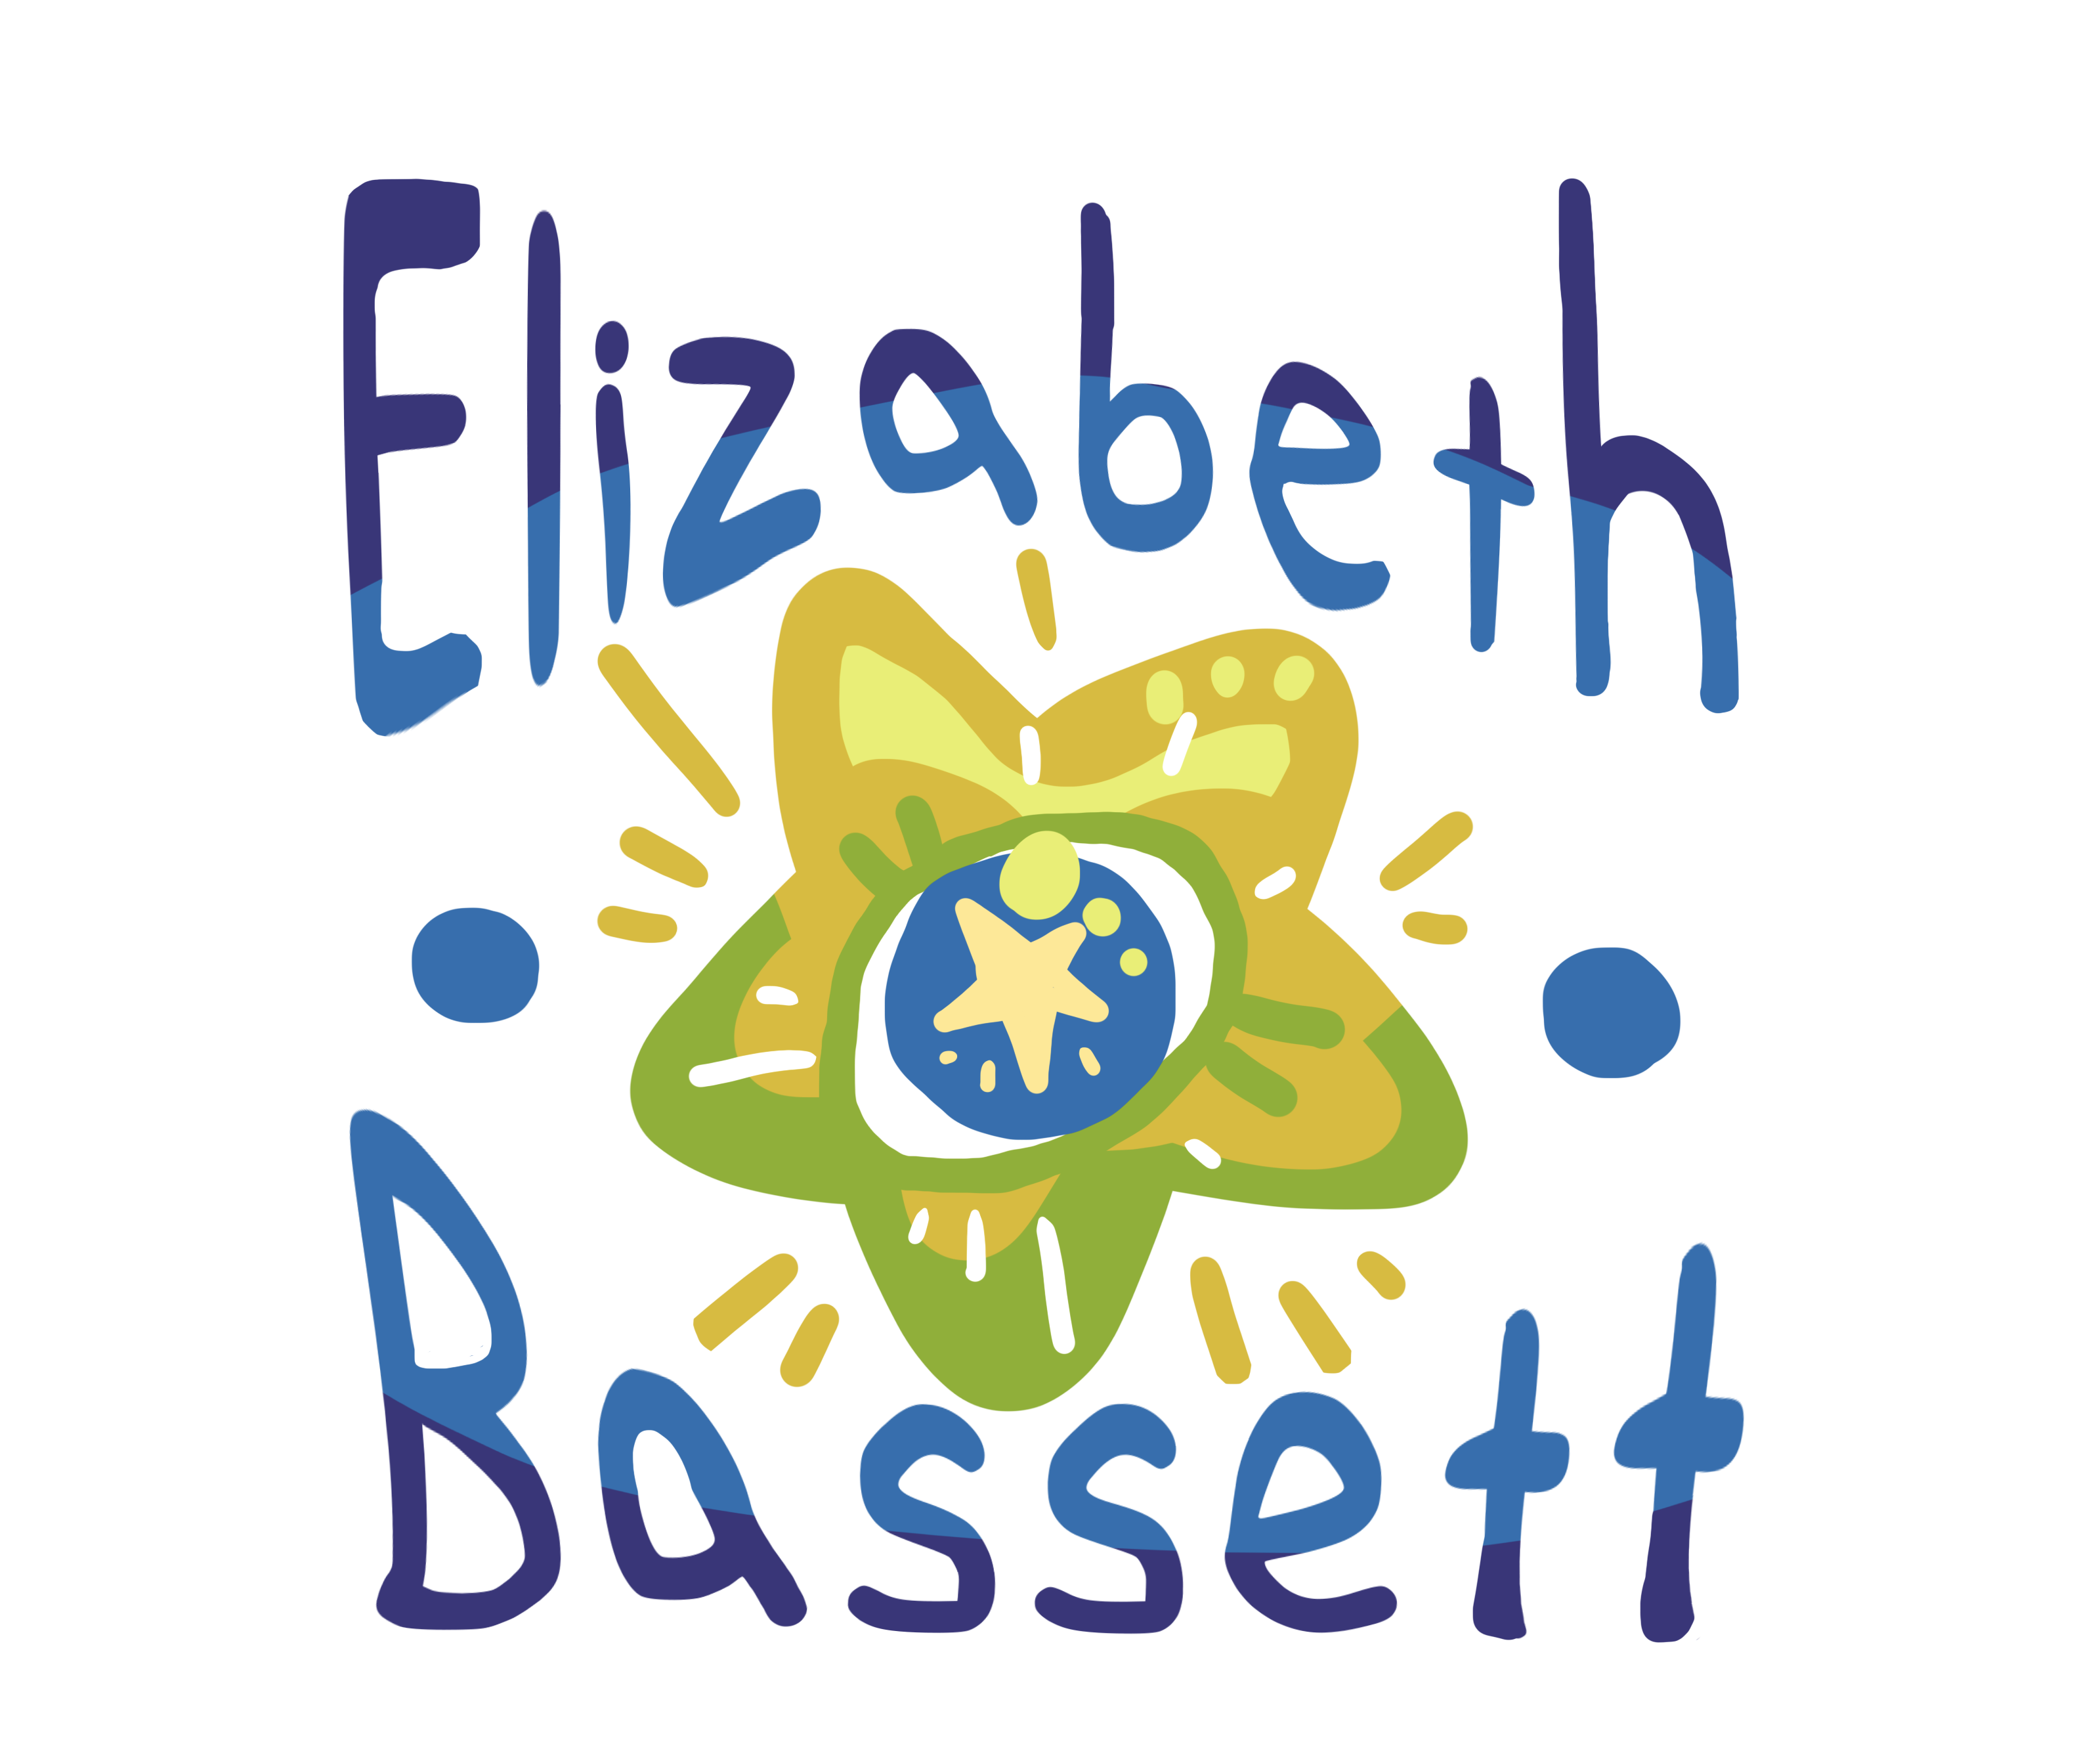 Elizabeth Bassett's Portfolio - Loading